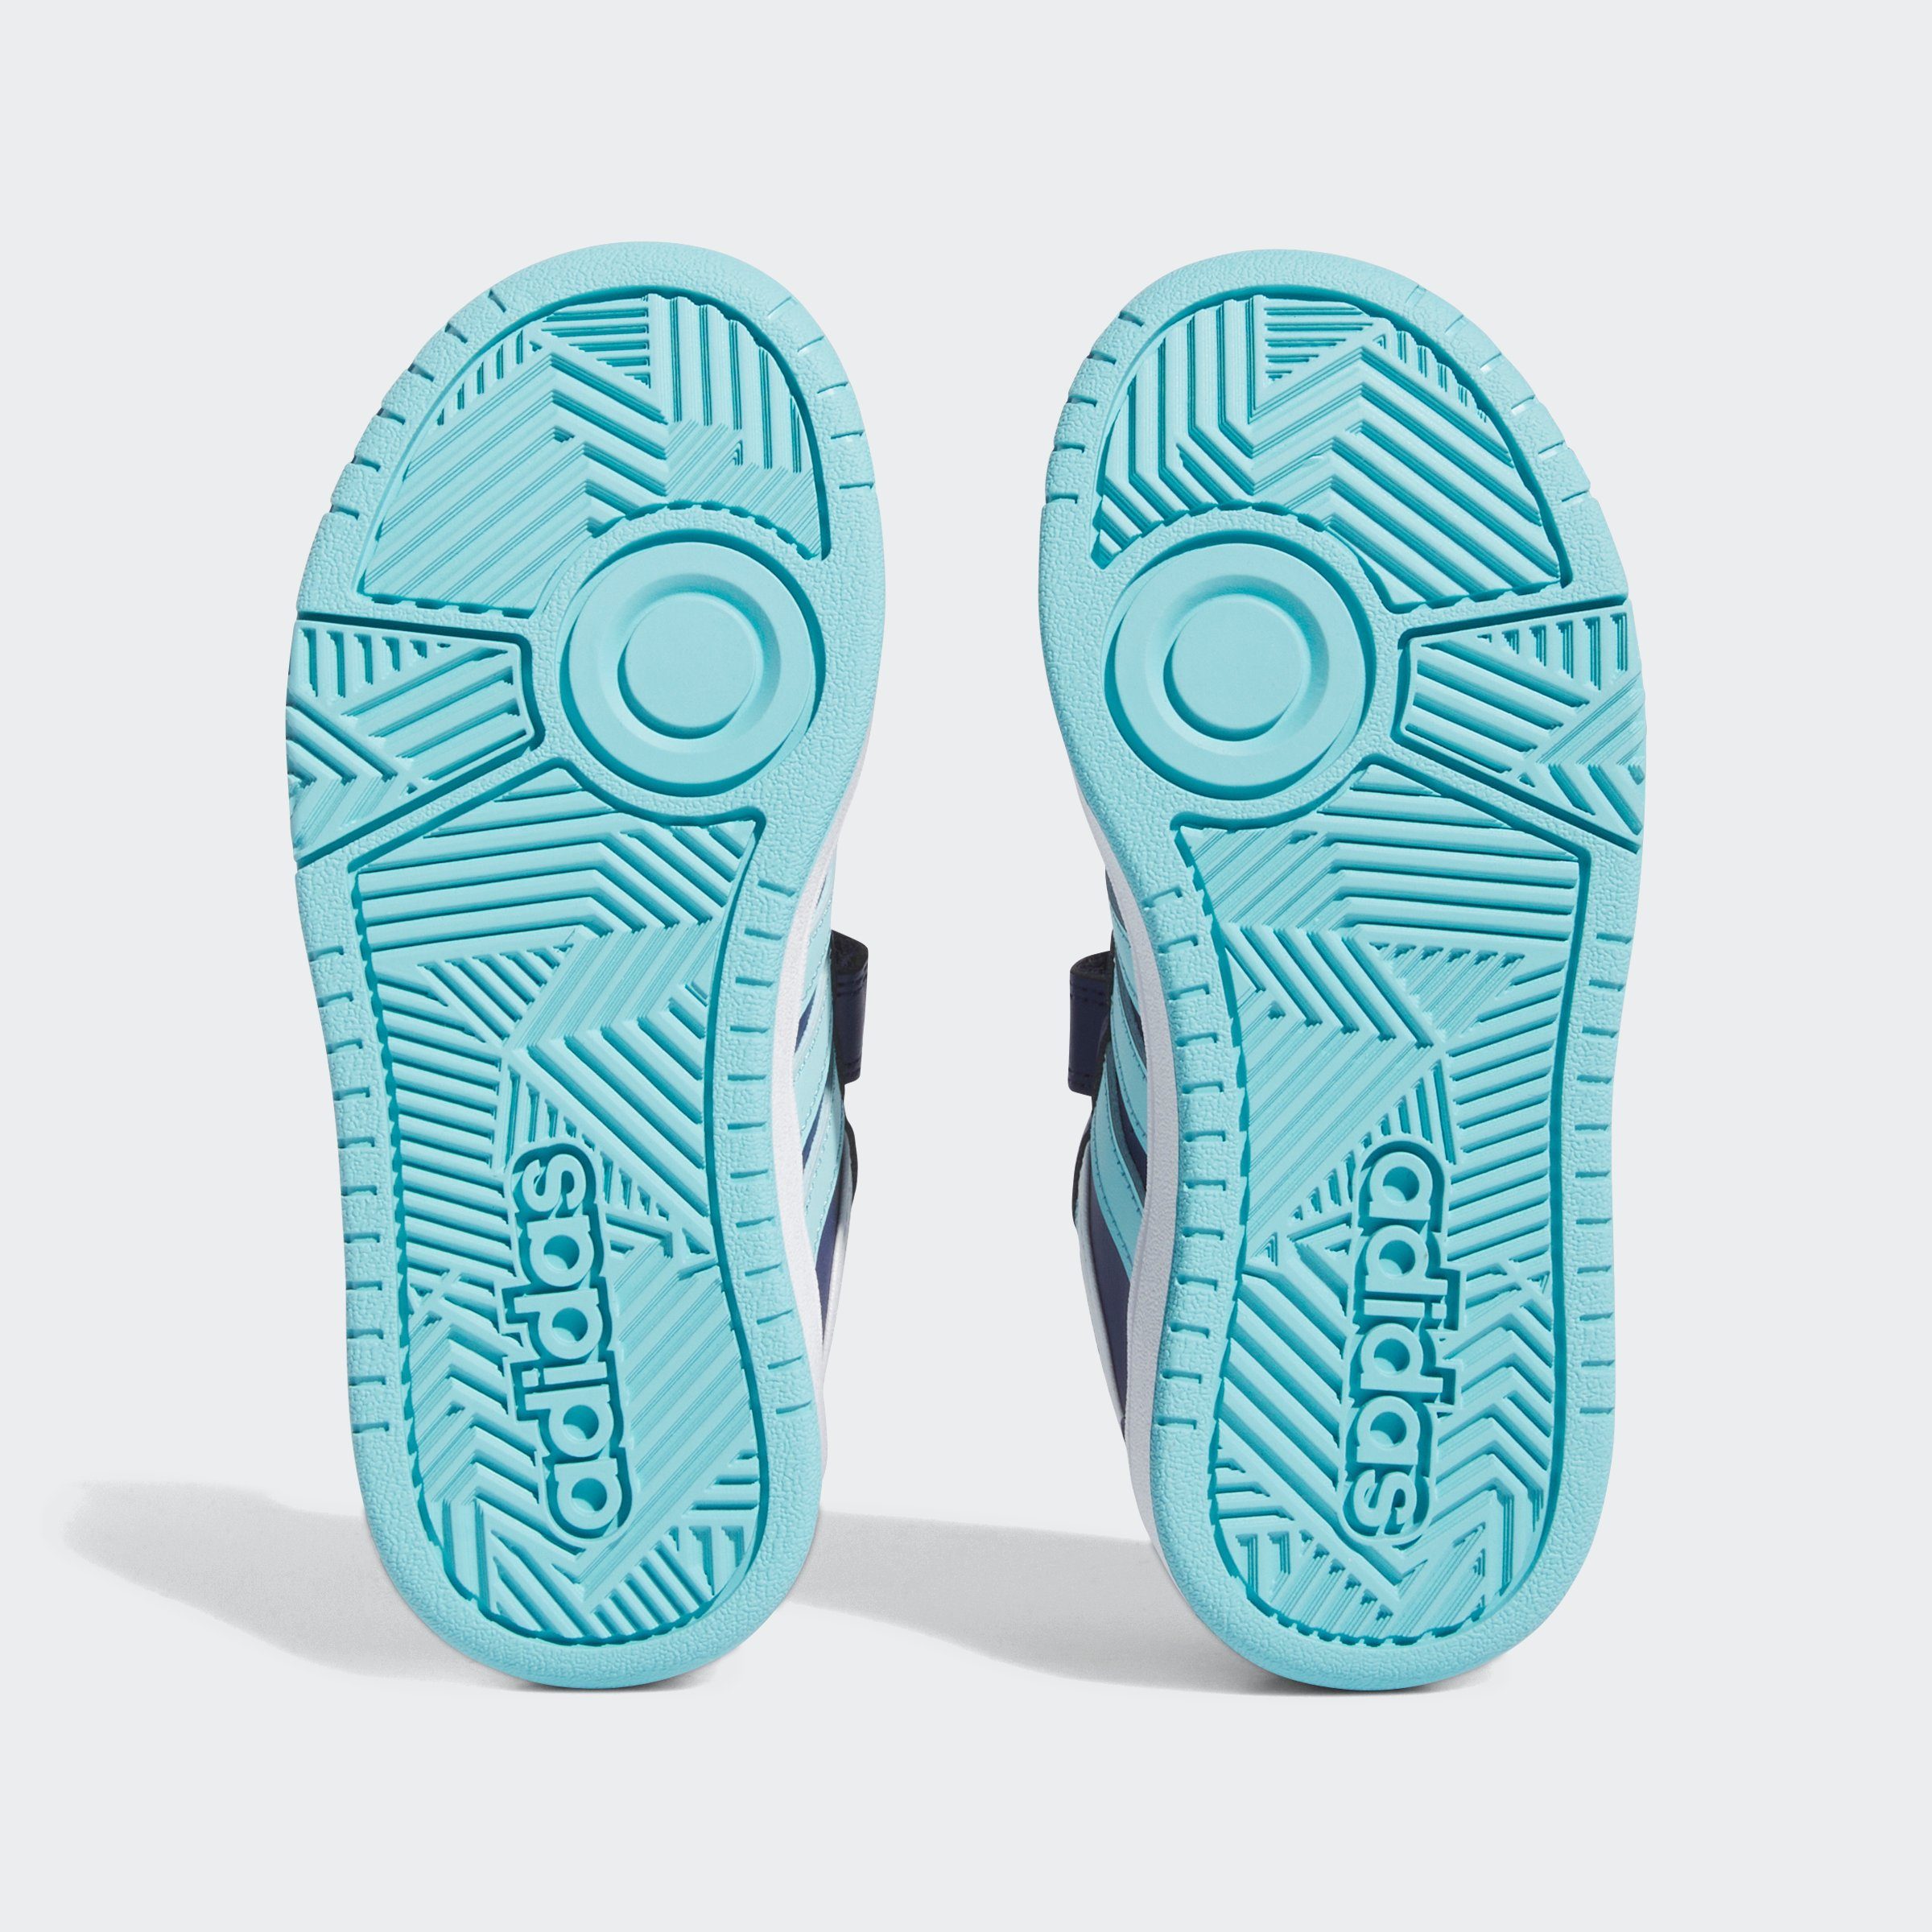 Sportswear / Aqua Blue Sneaker HOOPS Cloud White Light / adidas Dark